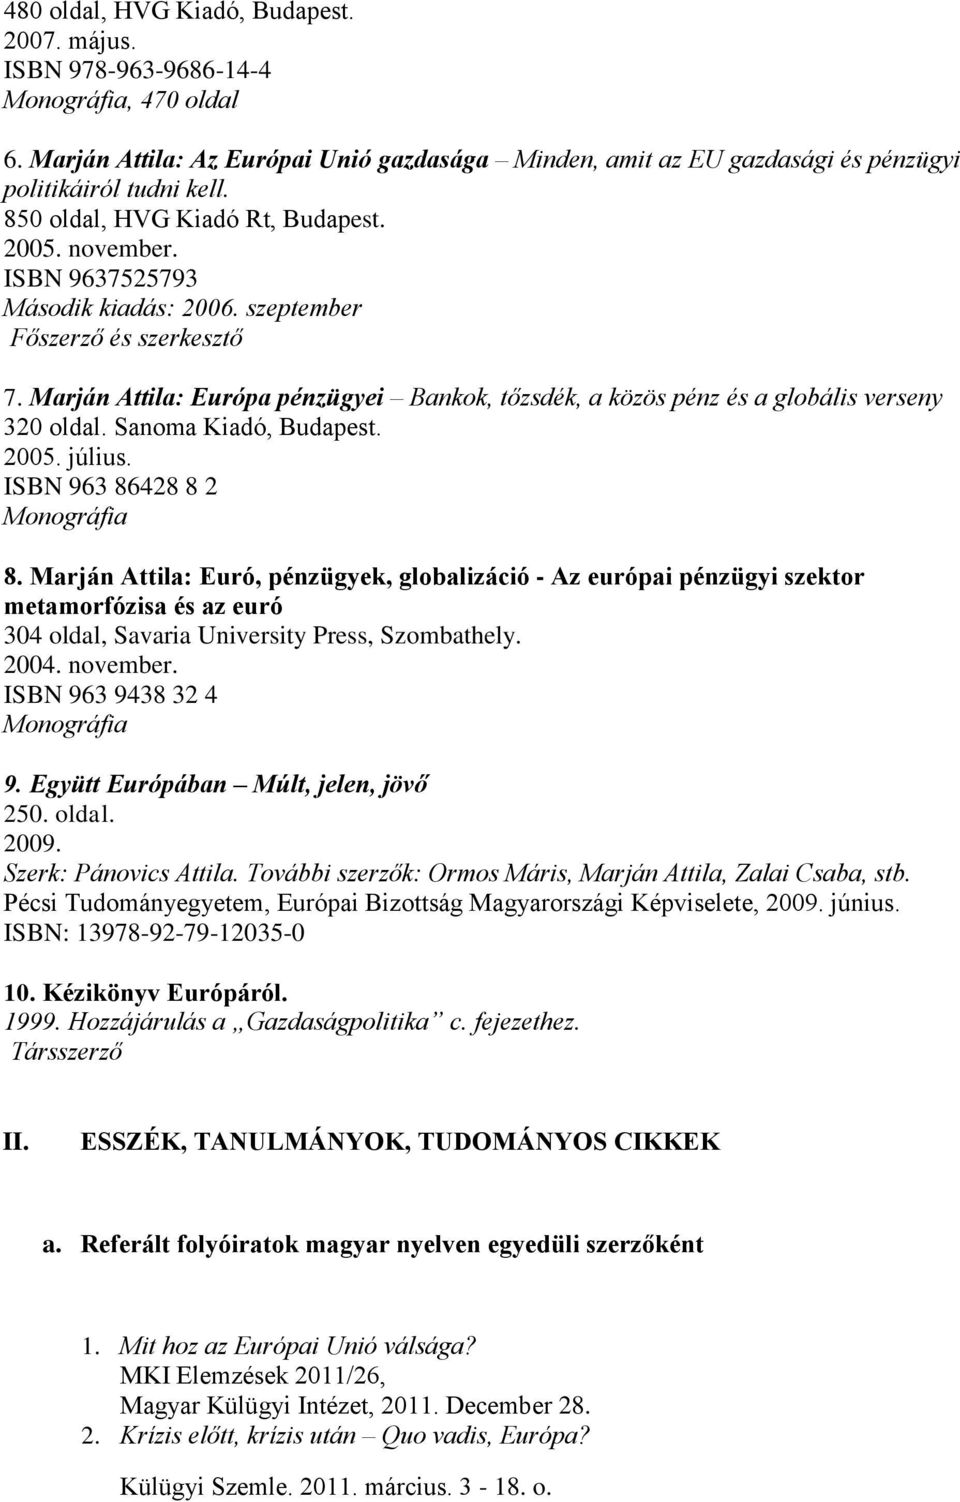 Marján Attila: Európa pénzügyei Bankok, tőzsdék, a közös pénz és a globális verseny 320 oldal. Sanoma Kiadó, Budapest. 2005. július. ISBN 963 86428 8 2 Monográfia 8.